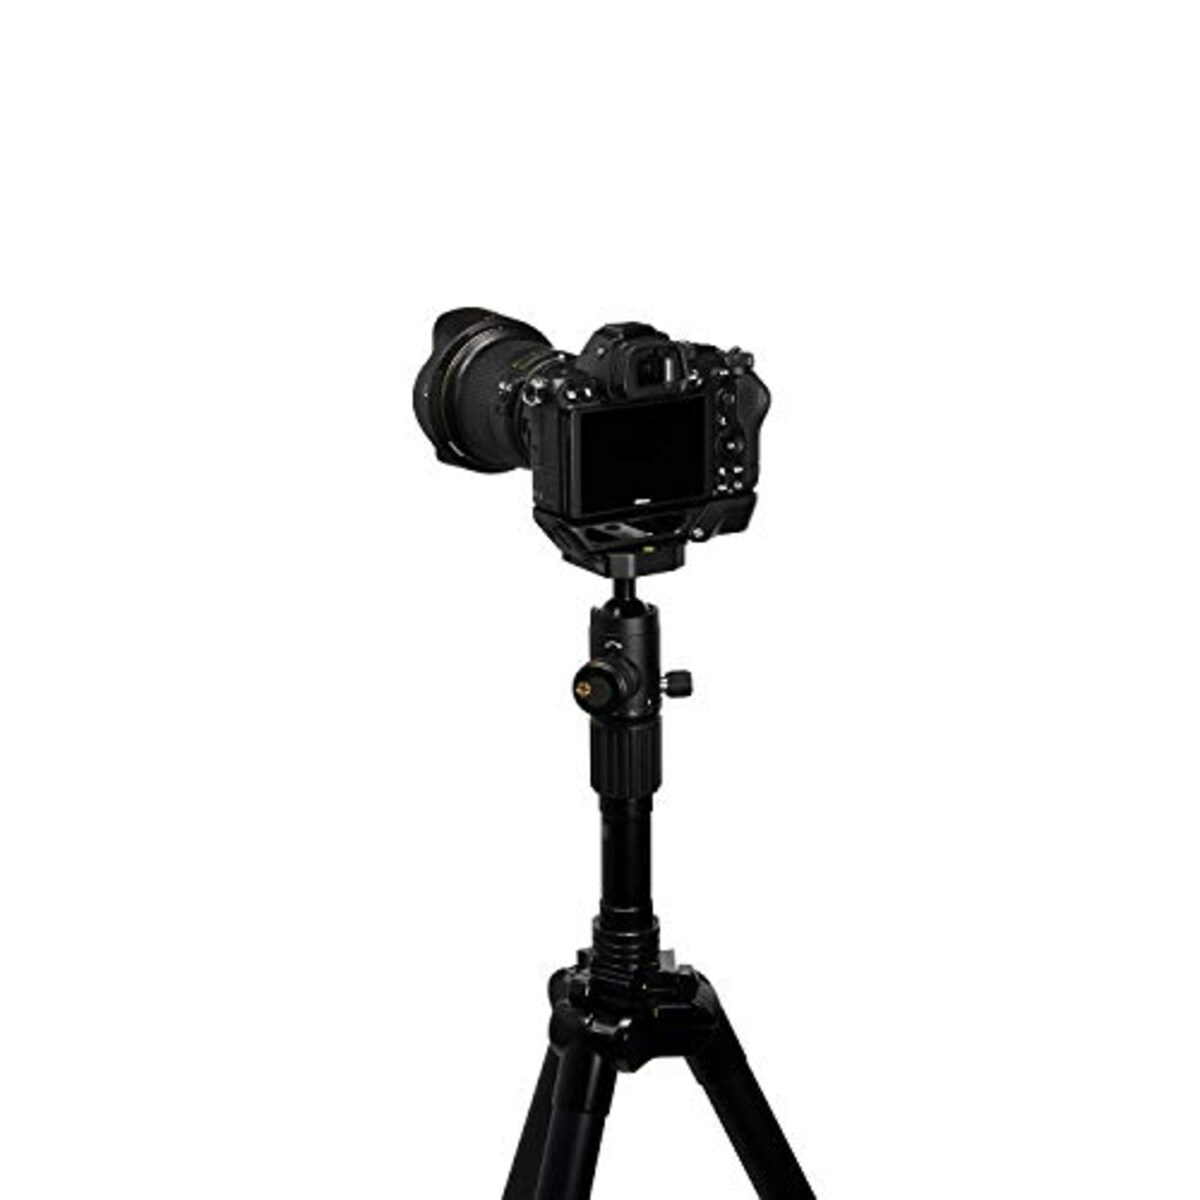  Nikon エクステンショングリップ Z-GR1 Z用 アルカスイス規格互換 ZGR1画像6 